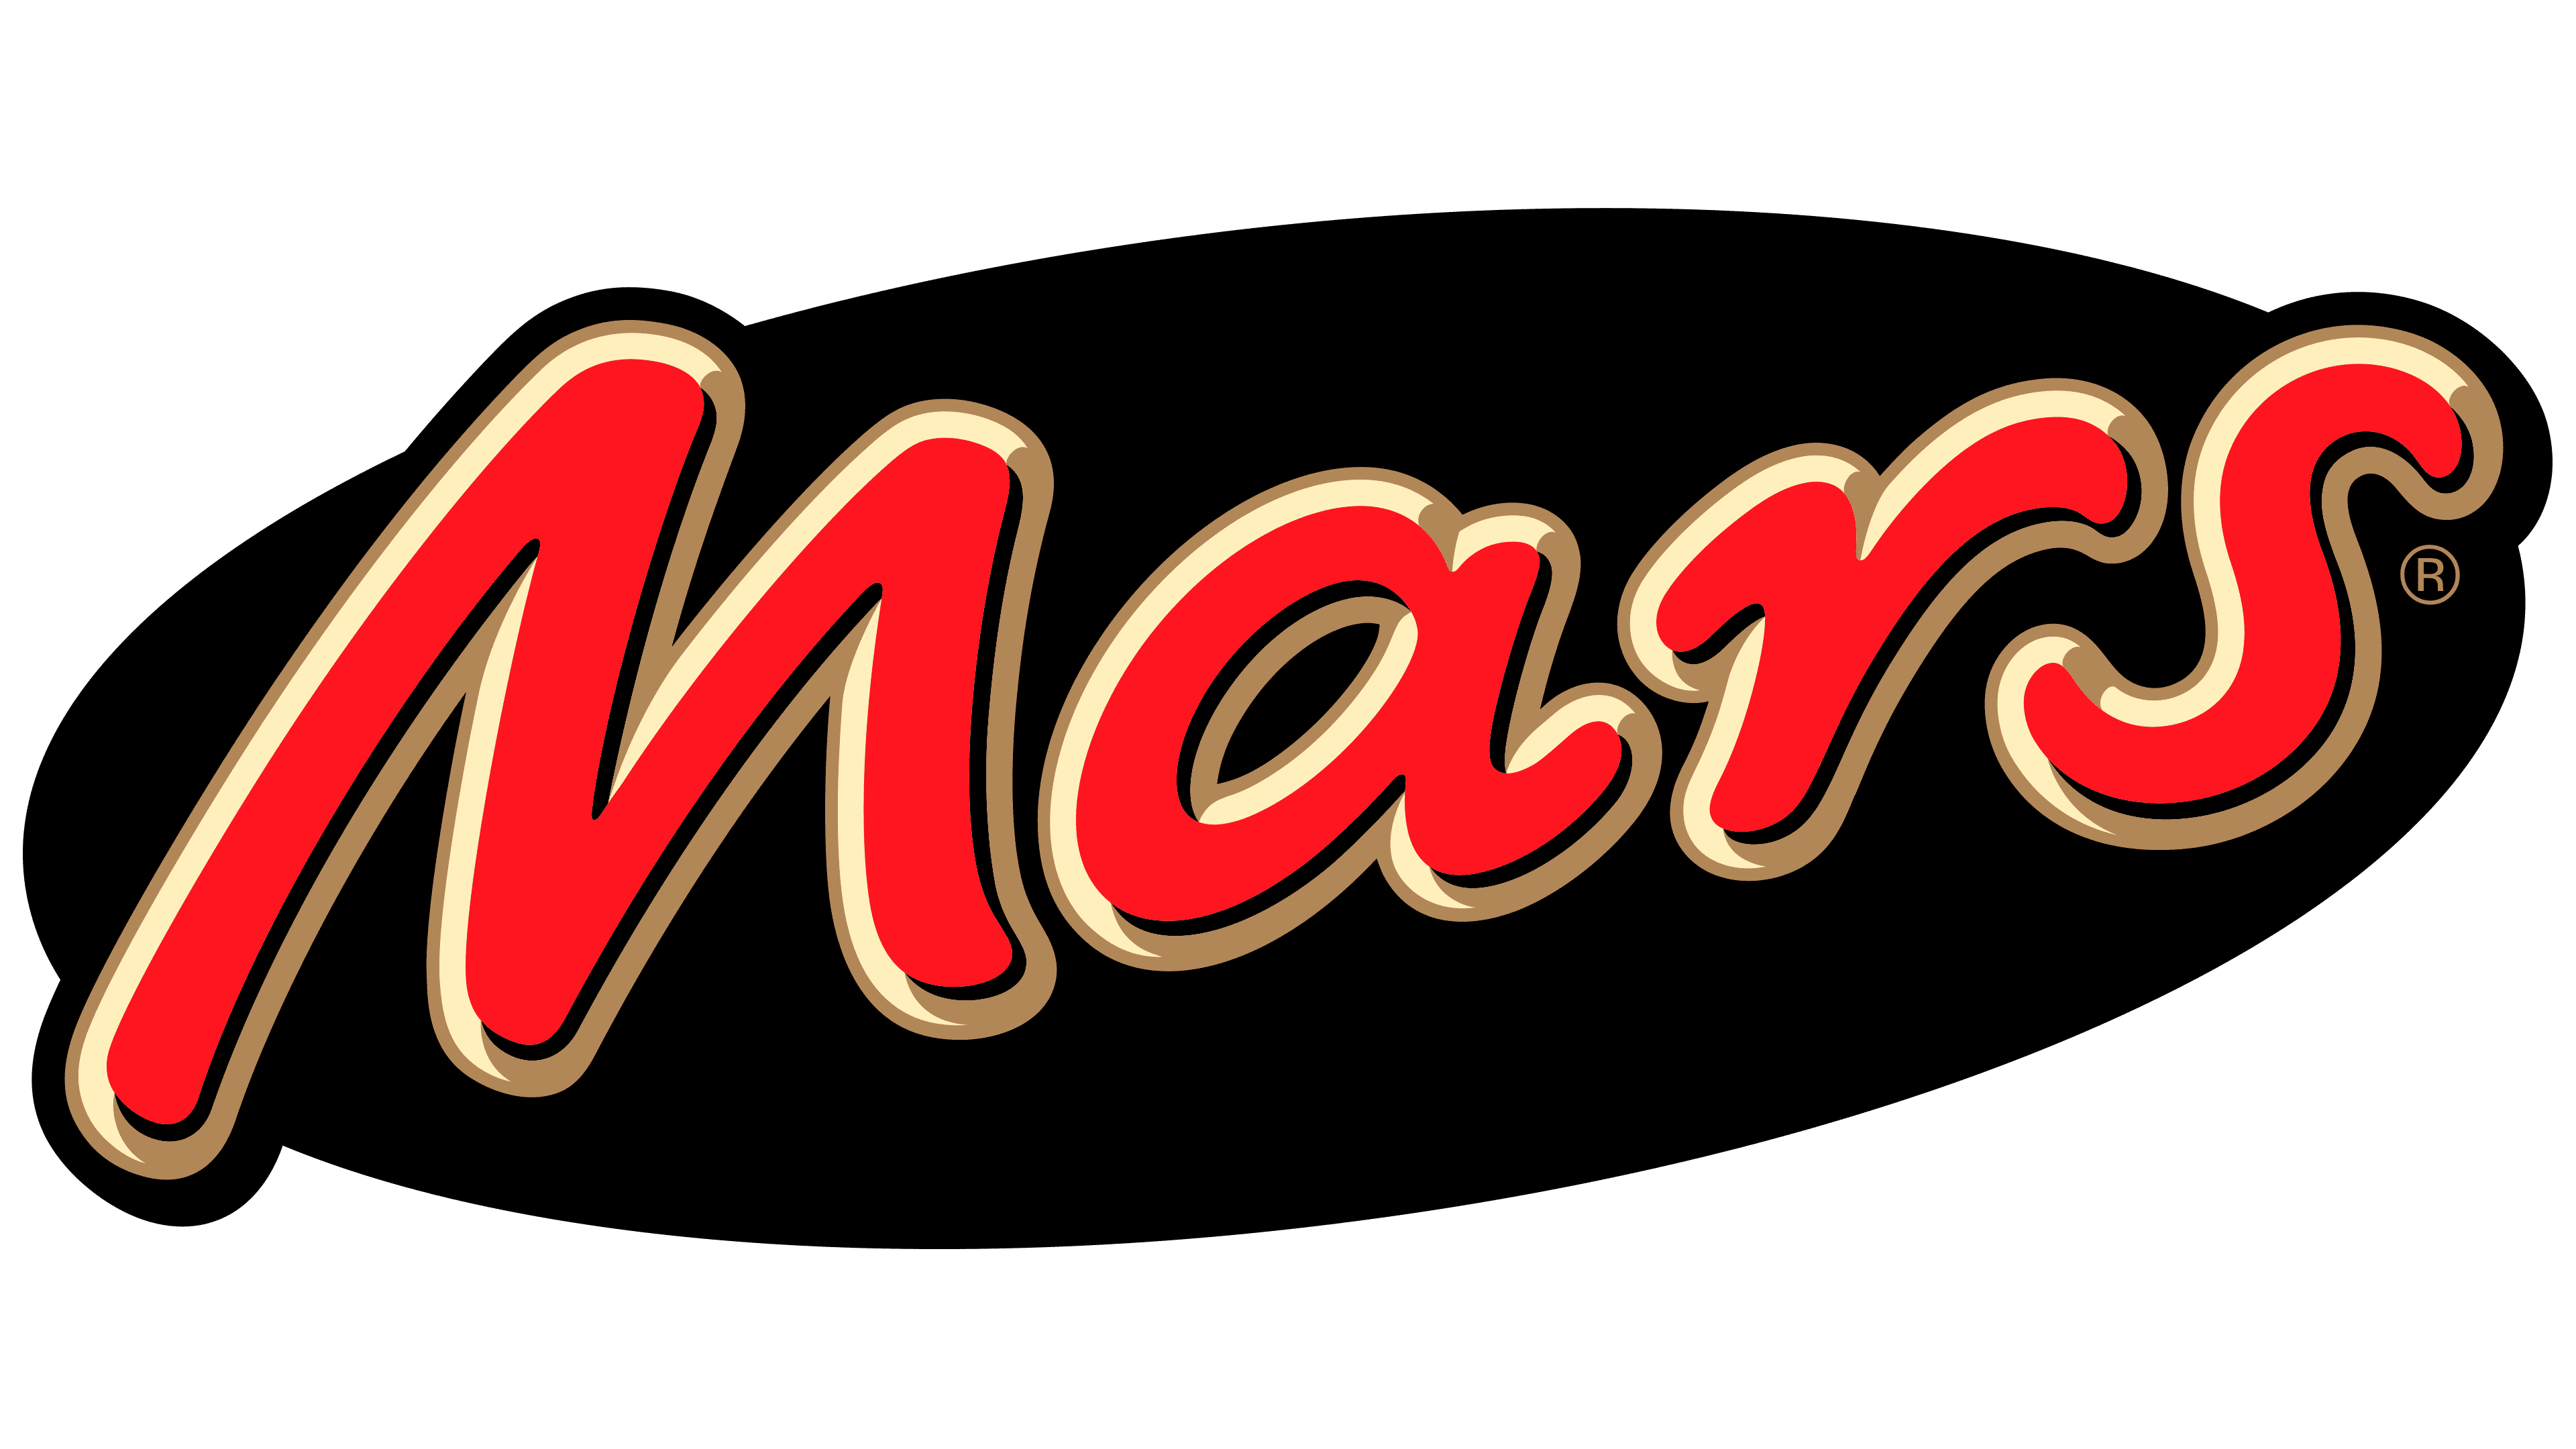 Mars-Logo